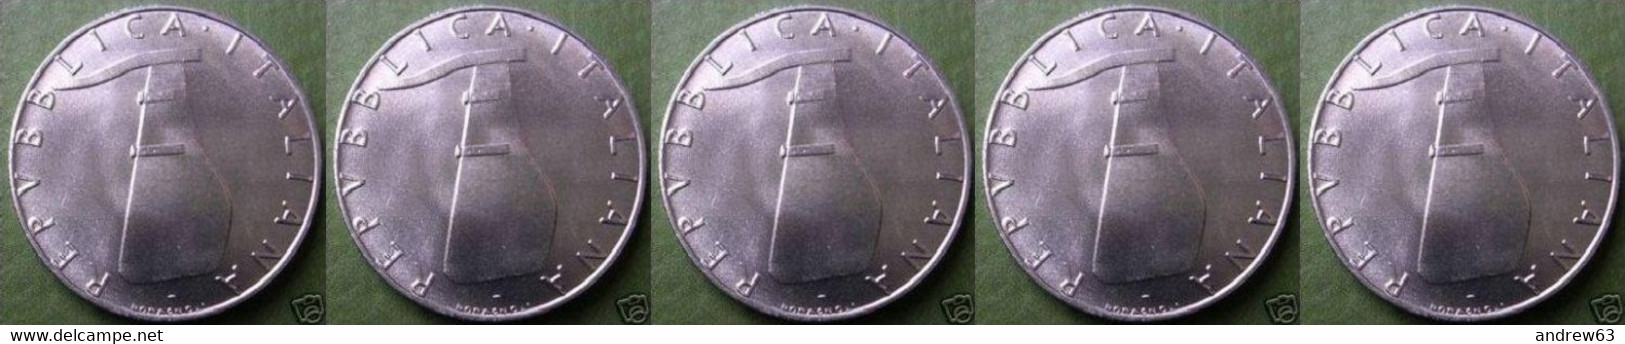 ITALIA - Lire 5 1982 - FDC/Unc Da Rotolino/from Roll 5 Monete/5 Coins - 5 Lire